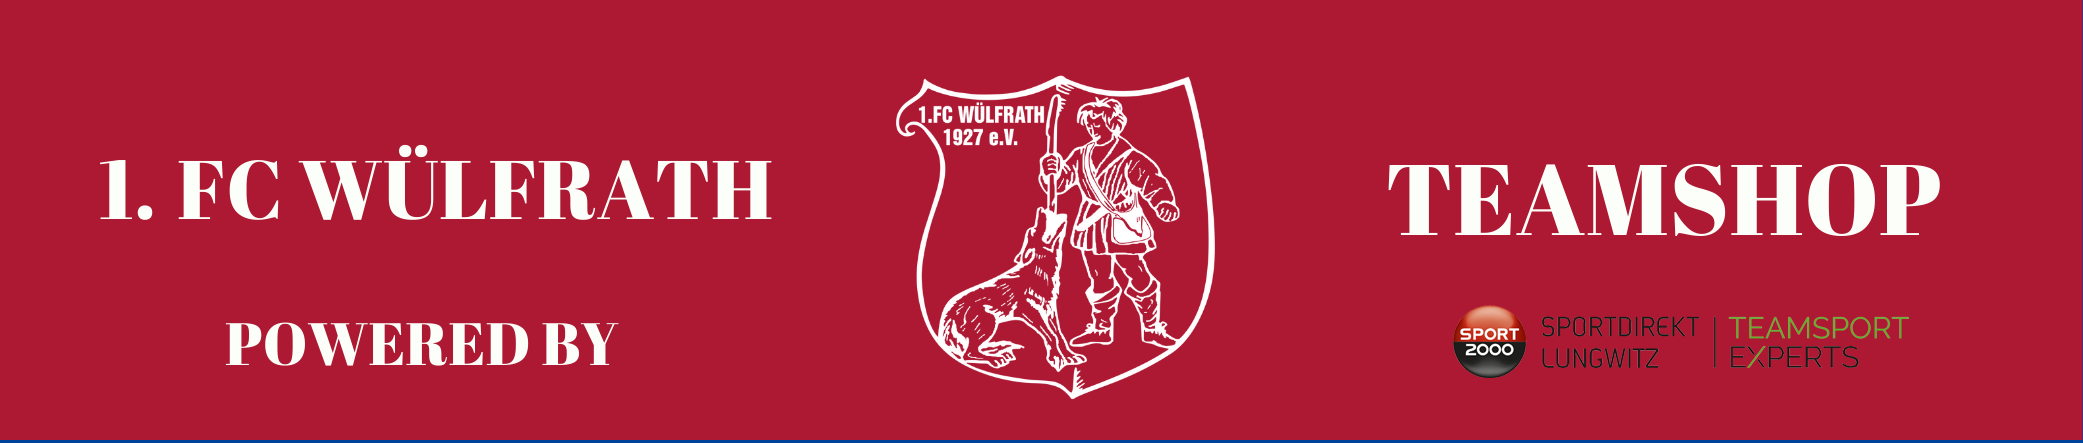 1.FC WÜLFRATH Title Image